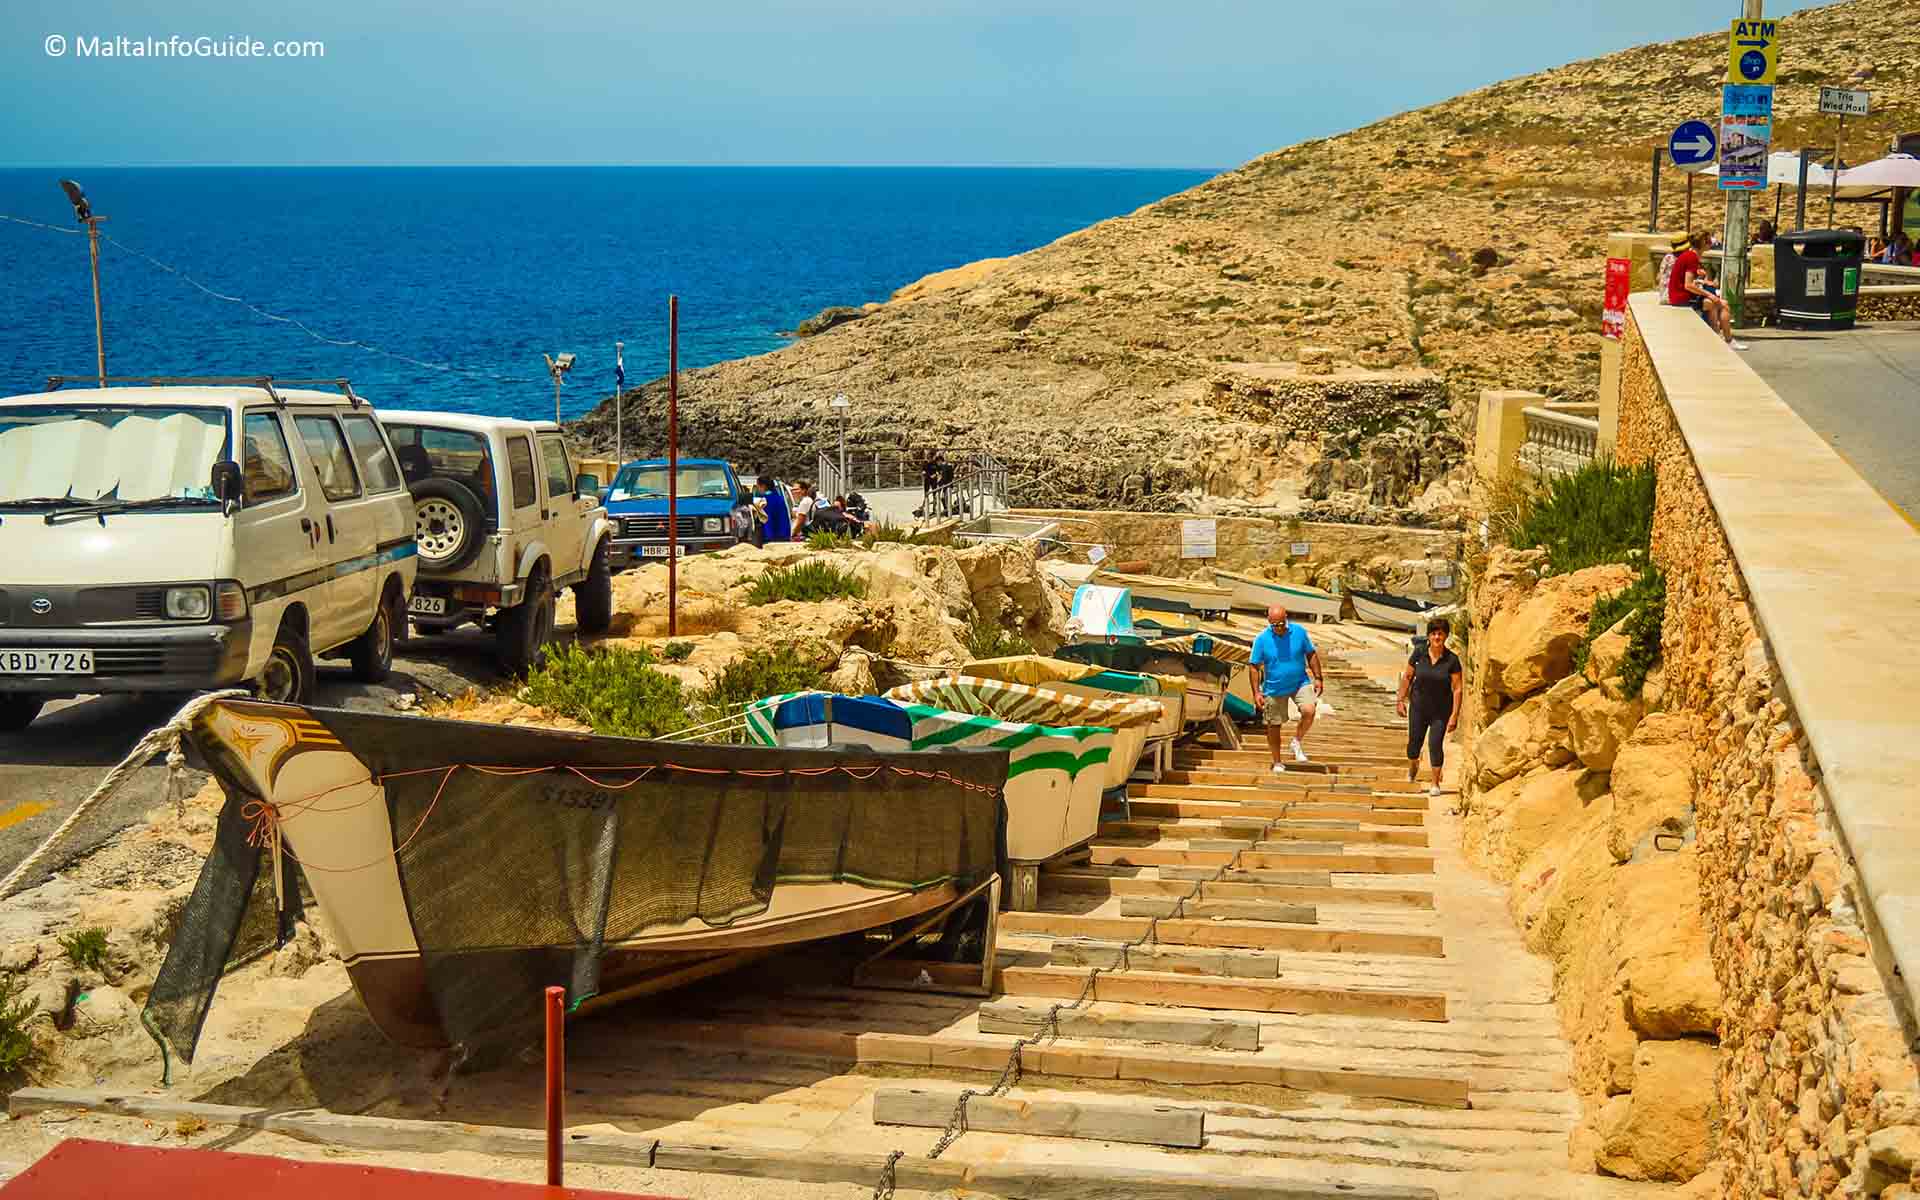 Boats parked on a ramp at Wied iz-Zurrieq Malta.